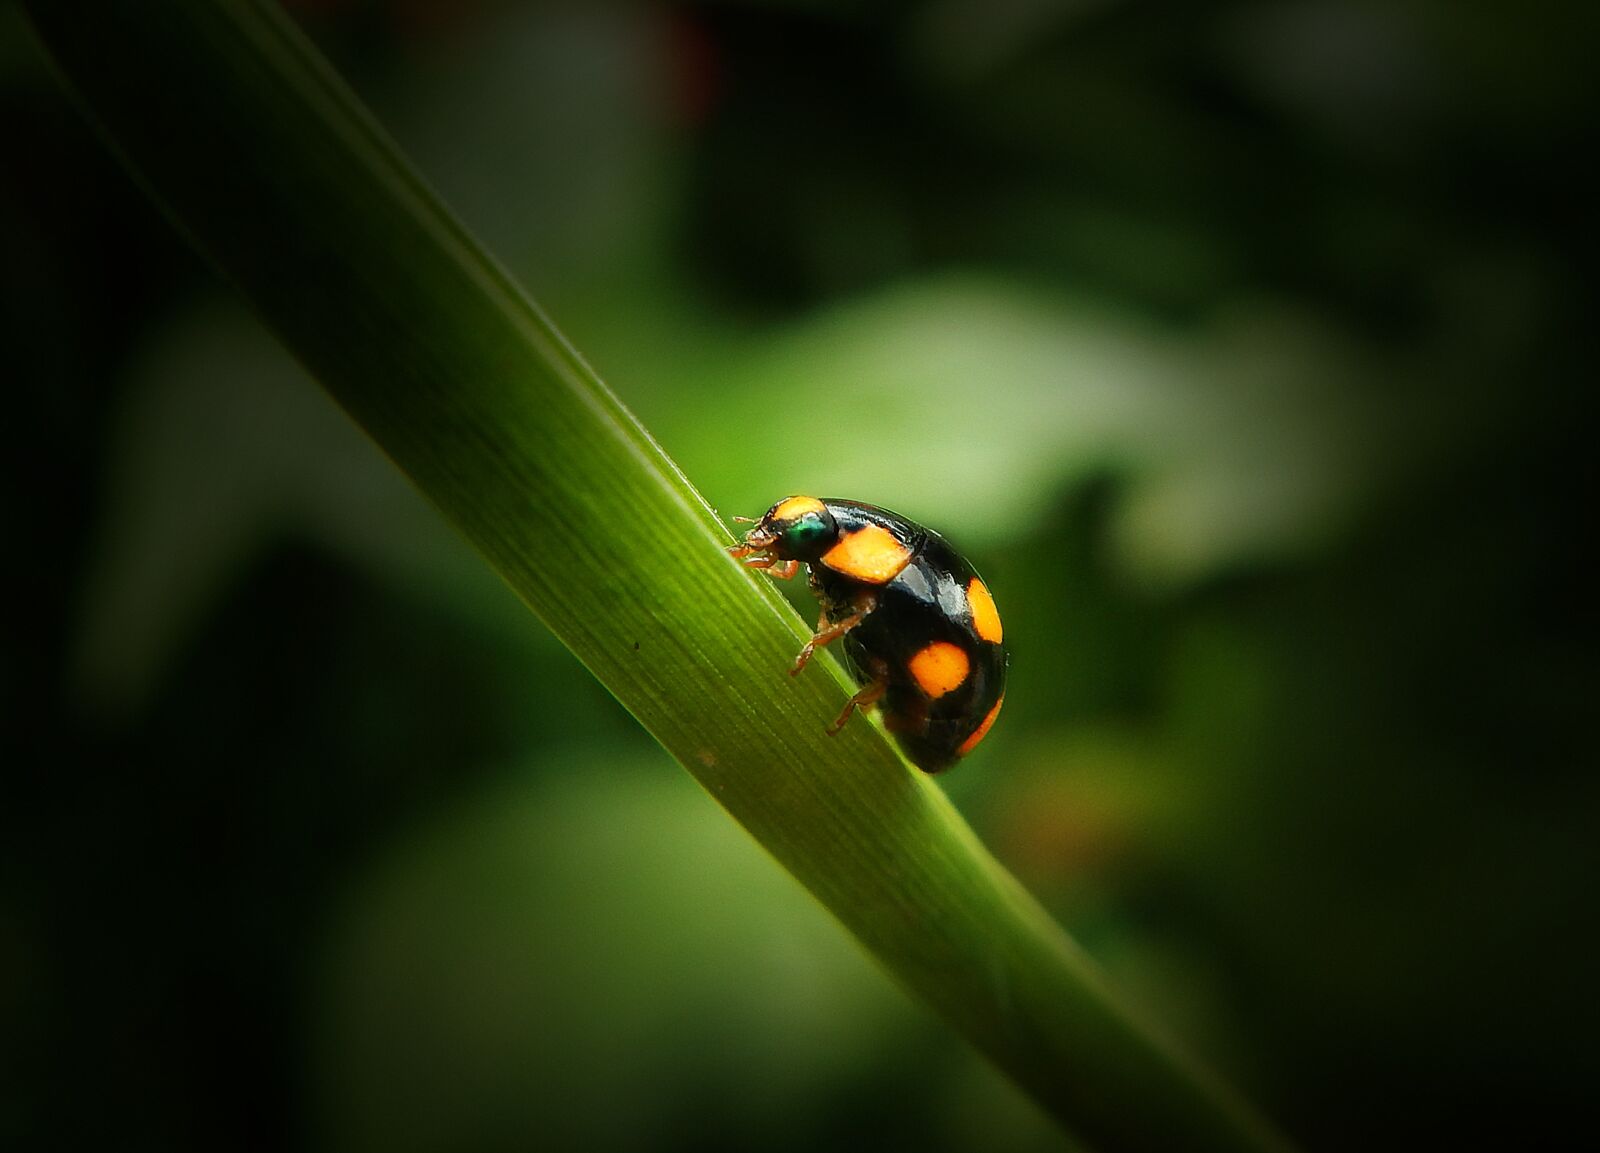 Nikon Coolpix AW110 sample photo. Ladybug, coleoptero, beetle photography